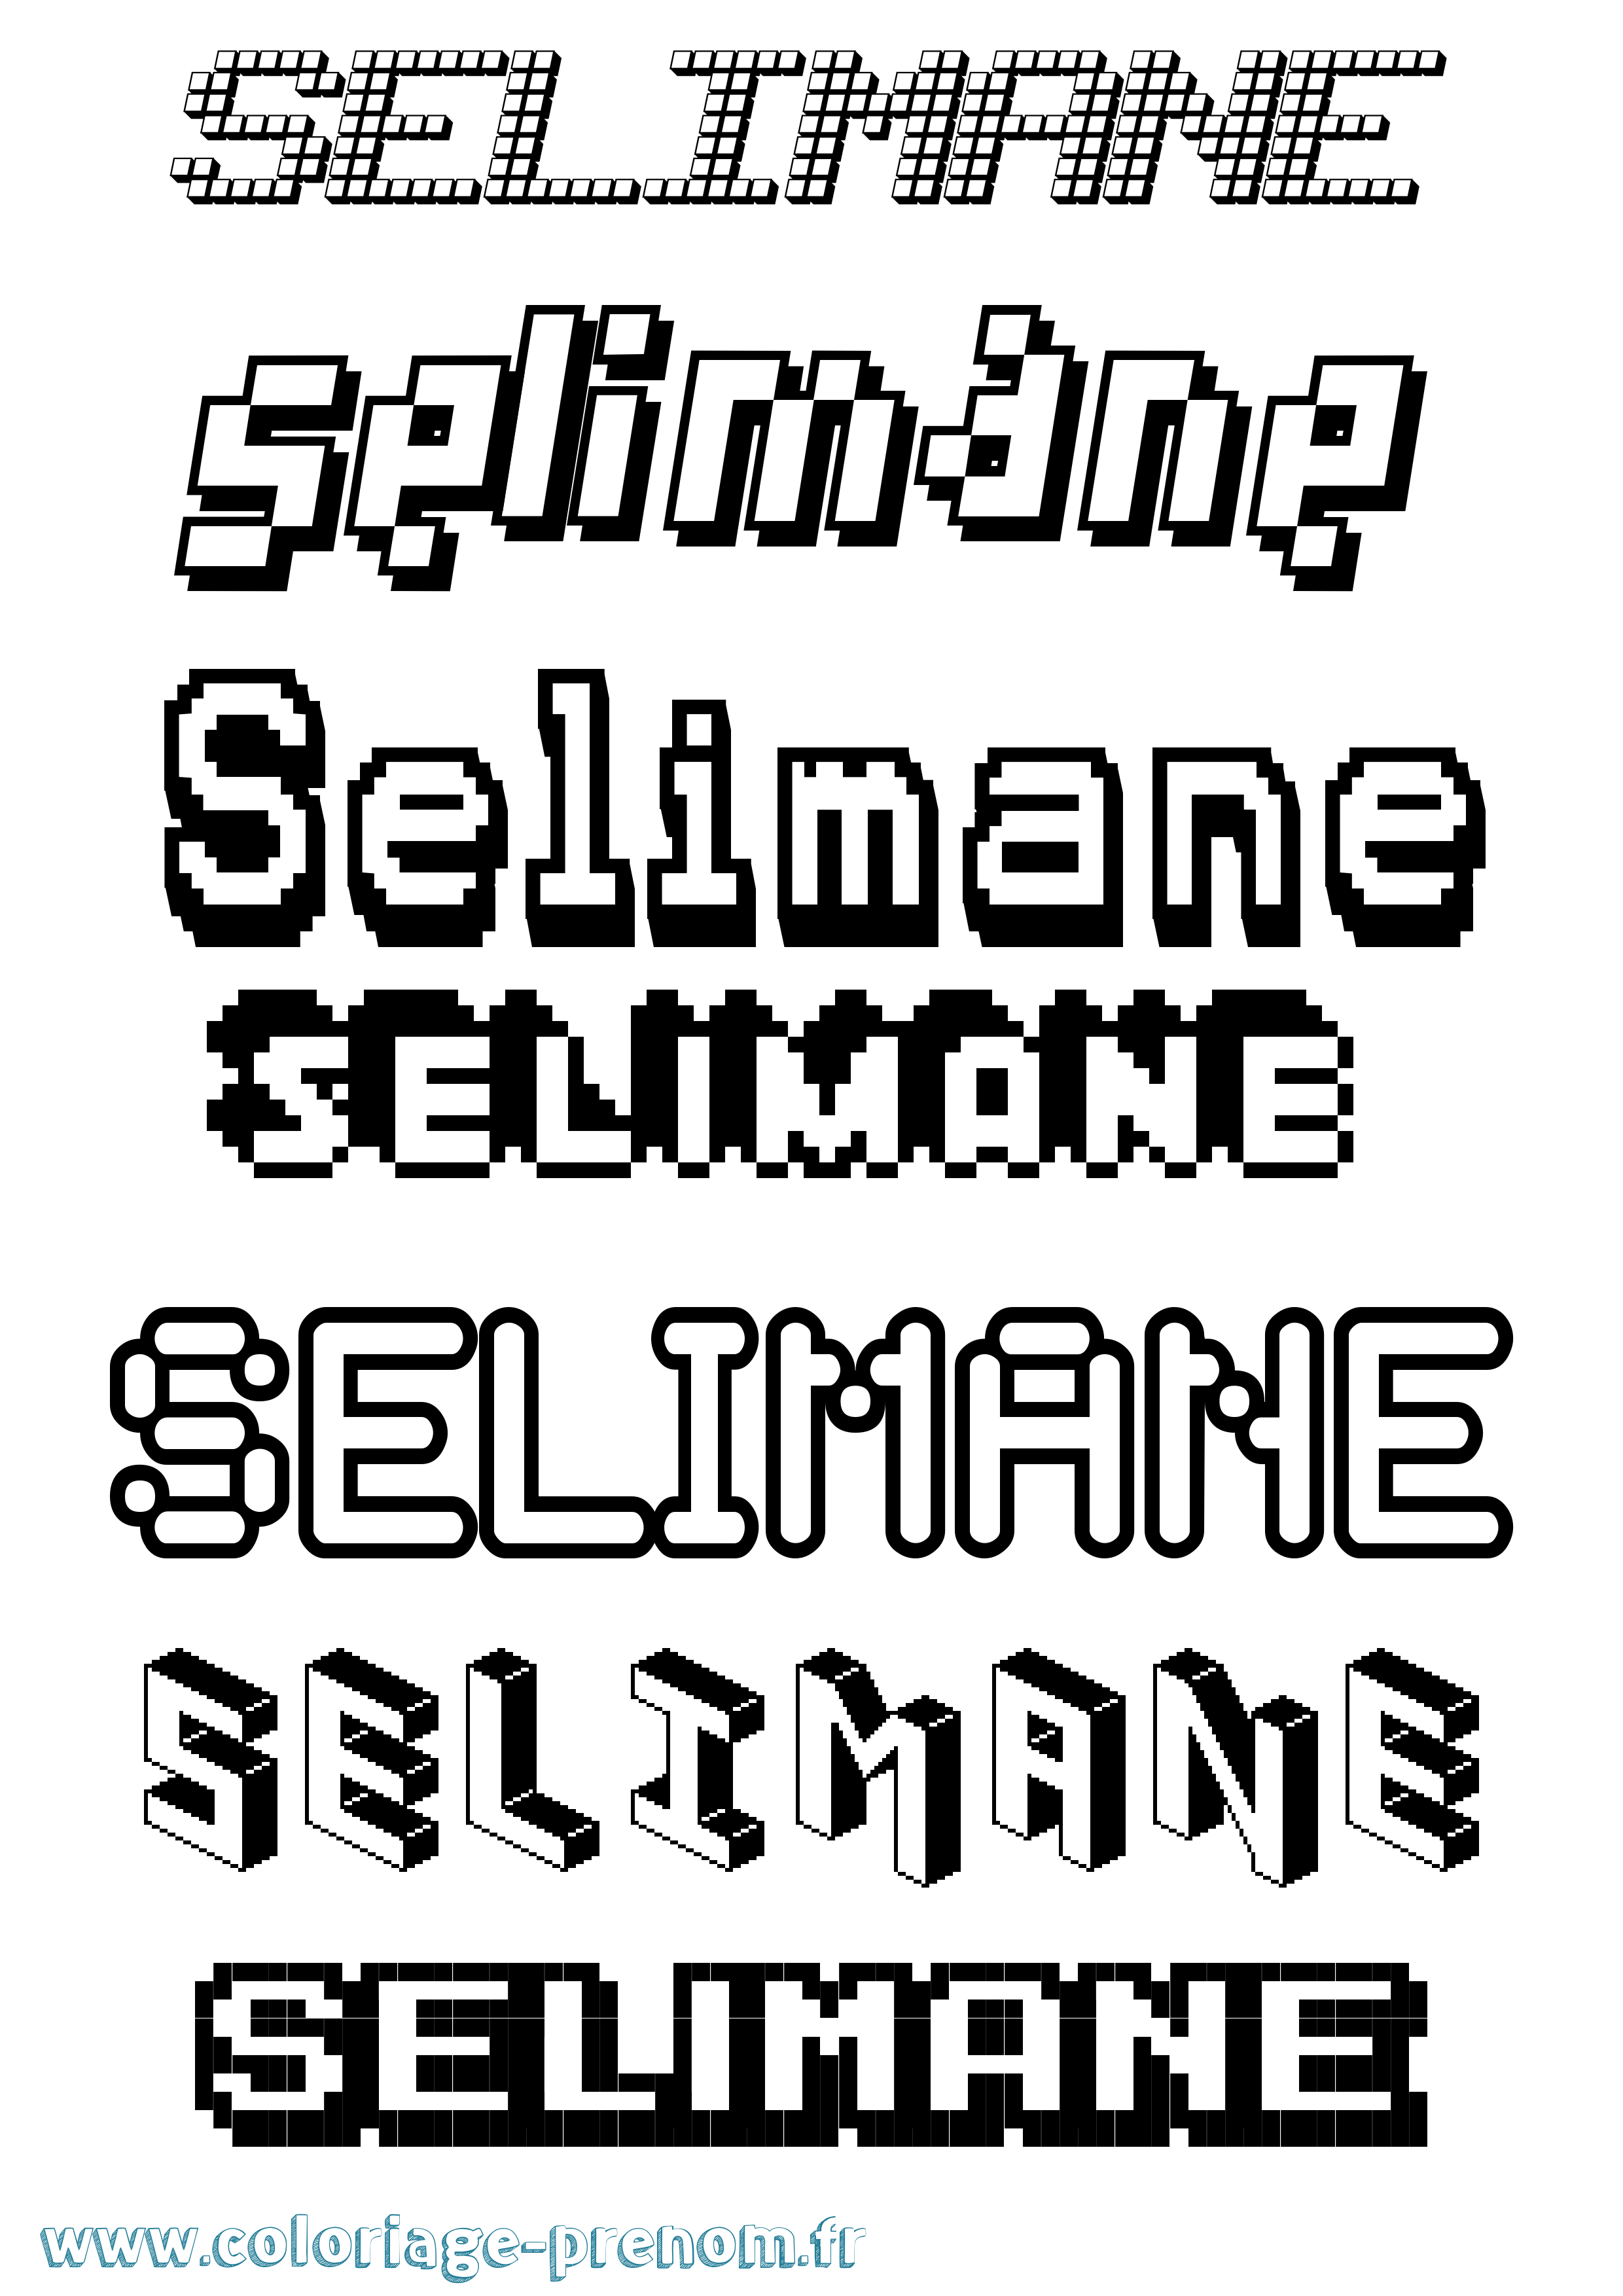 Coloriage prénom Selimane Pixel